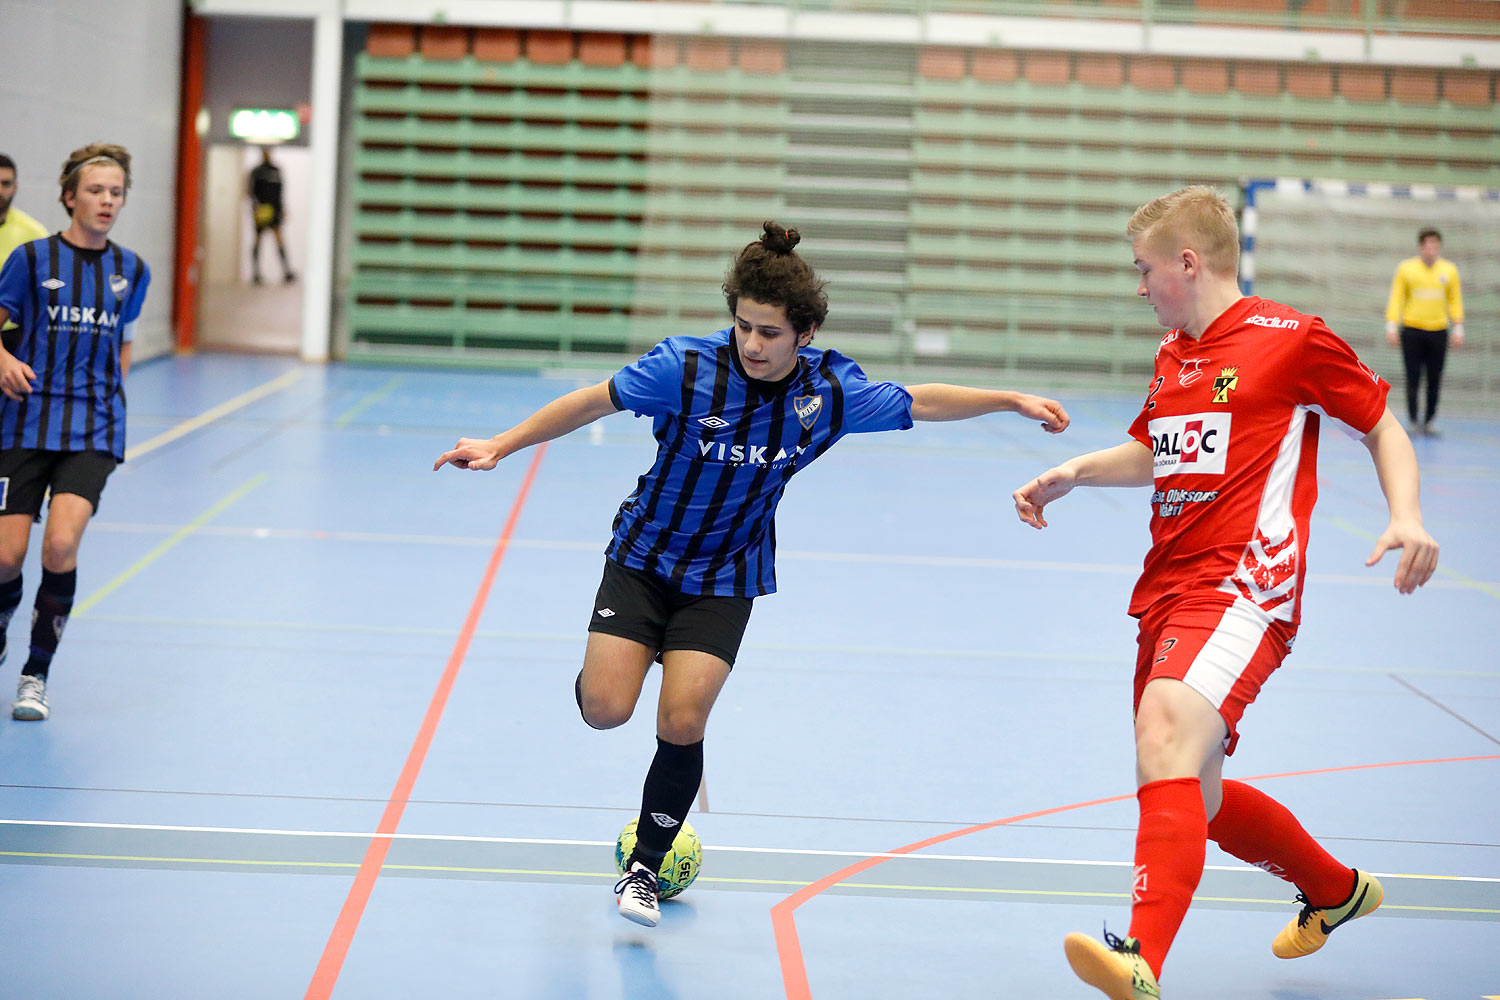 Skövde Futsalcup Herrjuniorer Ulricehamns IFK-Töreboda IK,herr,Arena Skövde,Skövde,Sverige,Skövde Futsalcup 2016,Futsal,2016,141993